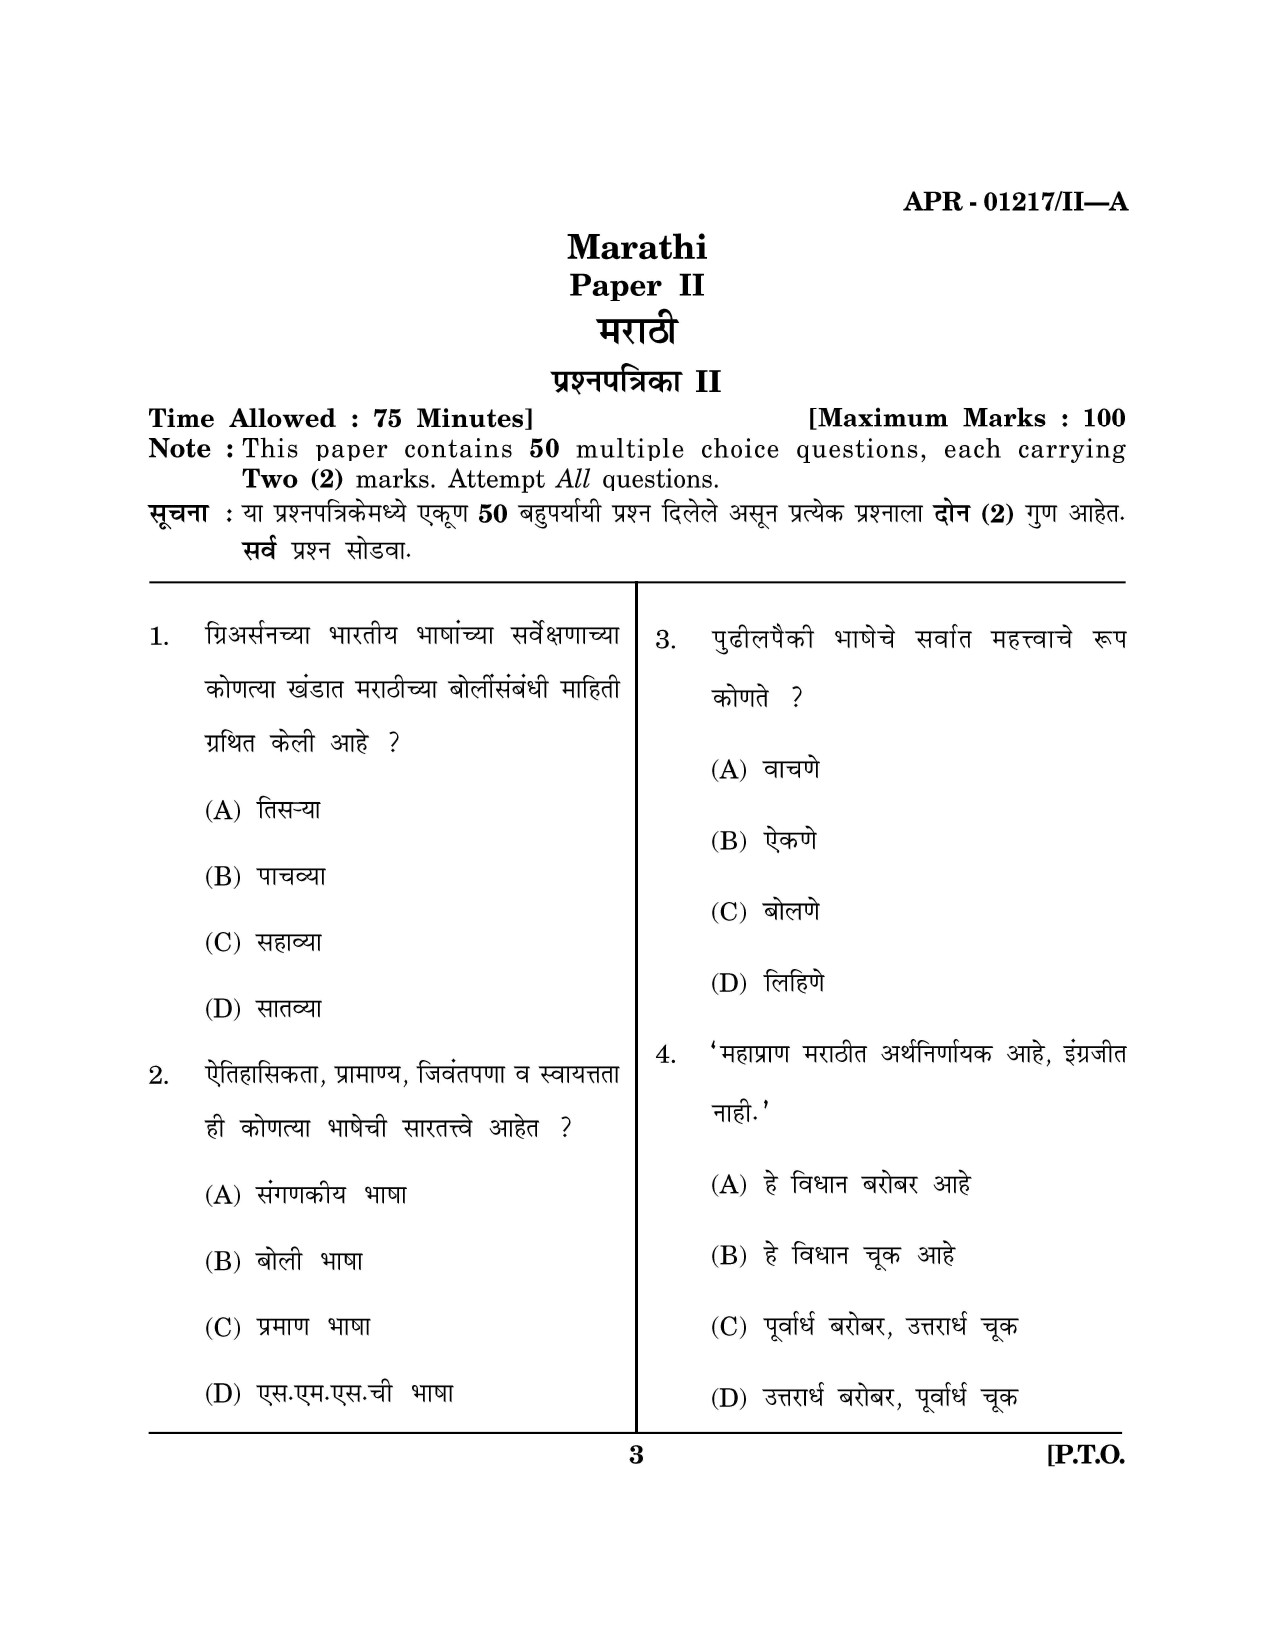 Maharashtra SET Marathi Question Paper II April 2017 2